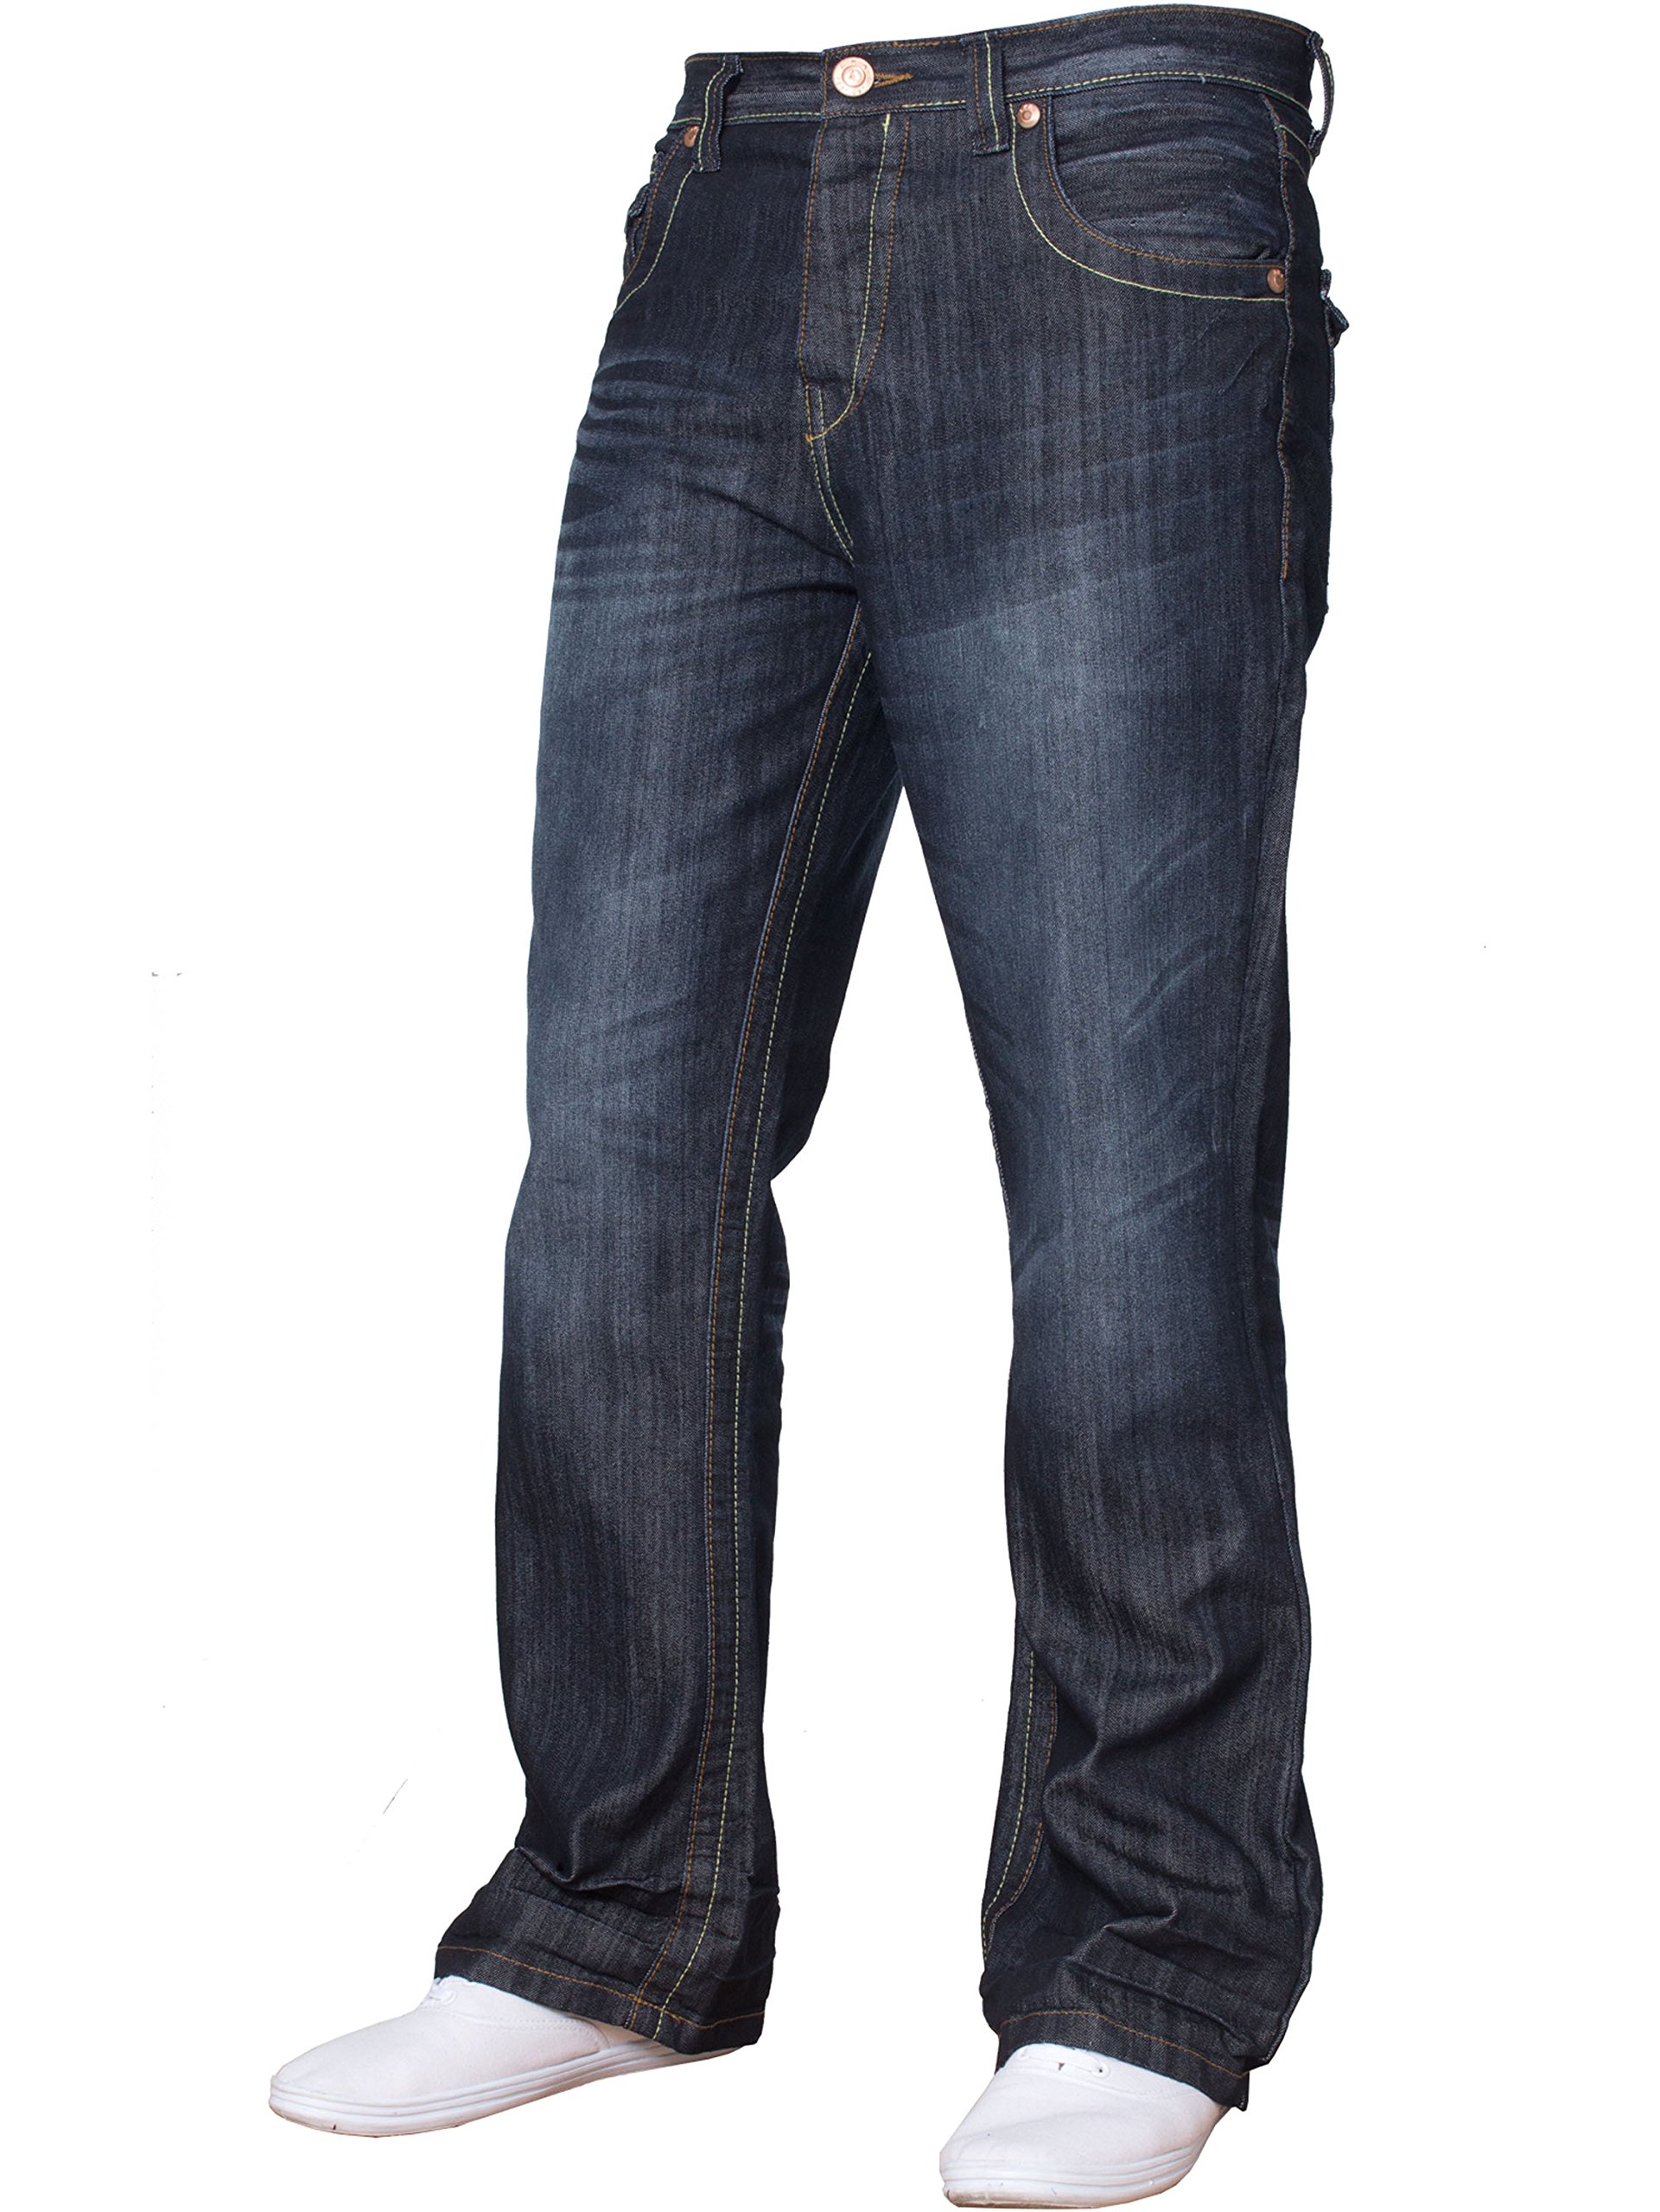 APT Herren Basic Bootcut Wide Leg Flared Denim Jeans – verschiedene Taillengrößen und Farben erhältlich, Dark Wash, 34 W/34 L